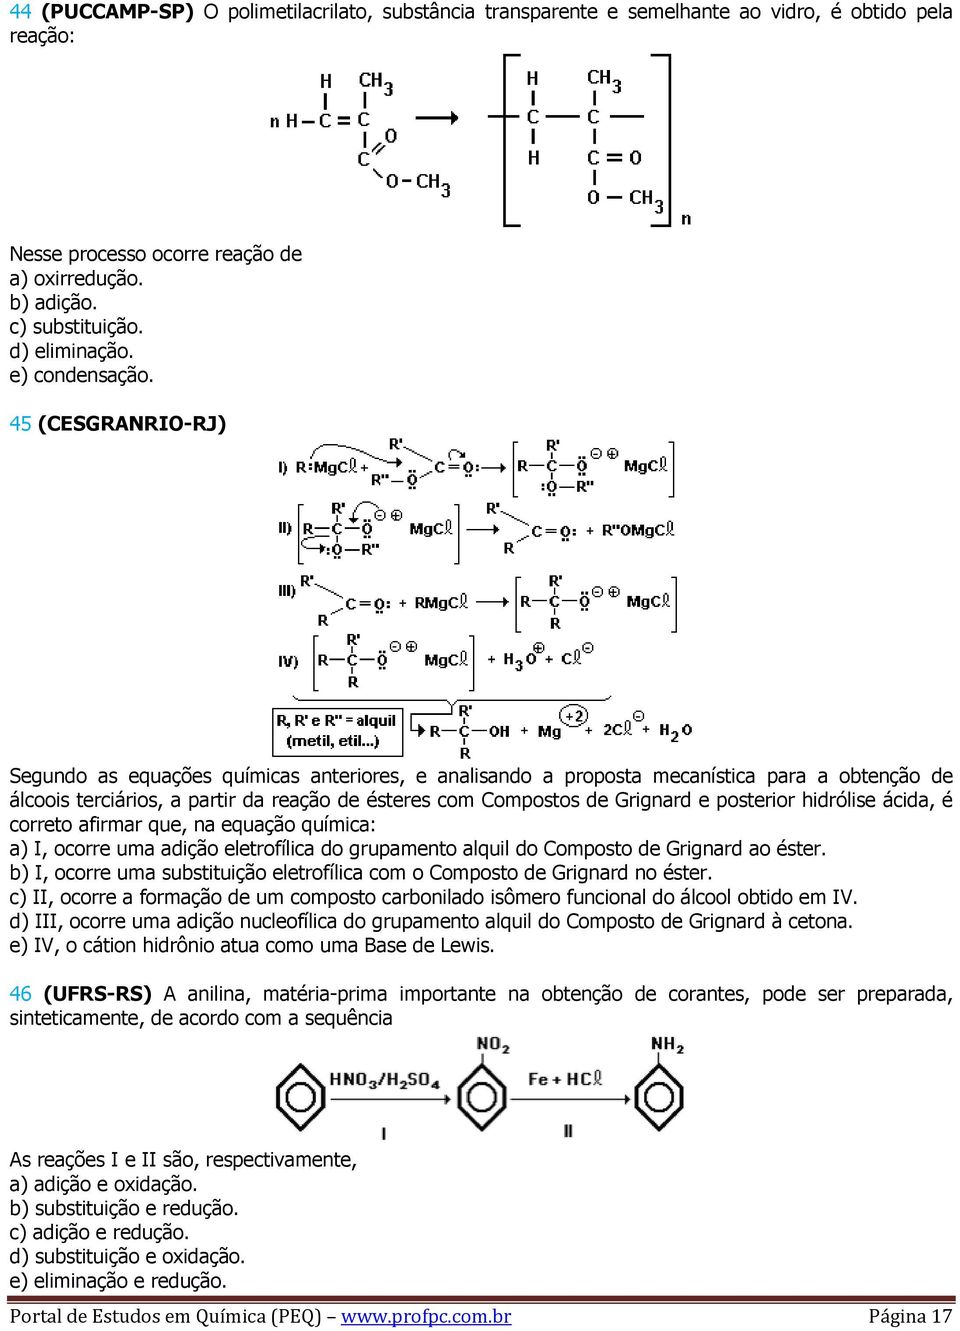 45 (CESGRANRIO-RJ) Segundo as equações químicas anteriores, e analisando a proposta mecanística para a obtenção de álcoois terciários, a partir da reação de ésteres com Compostos de Grignard e